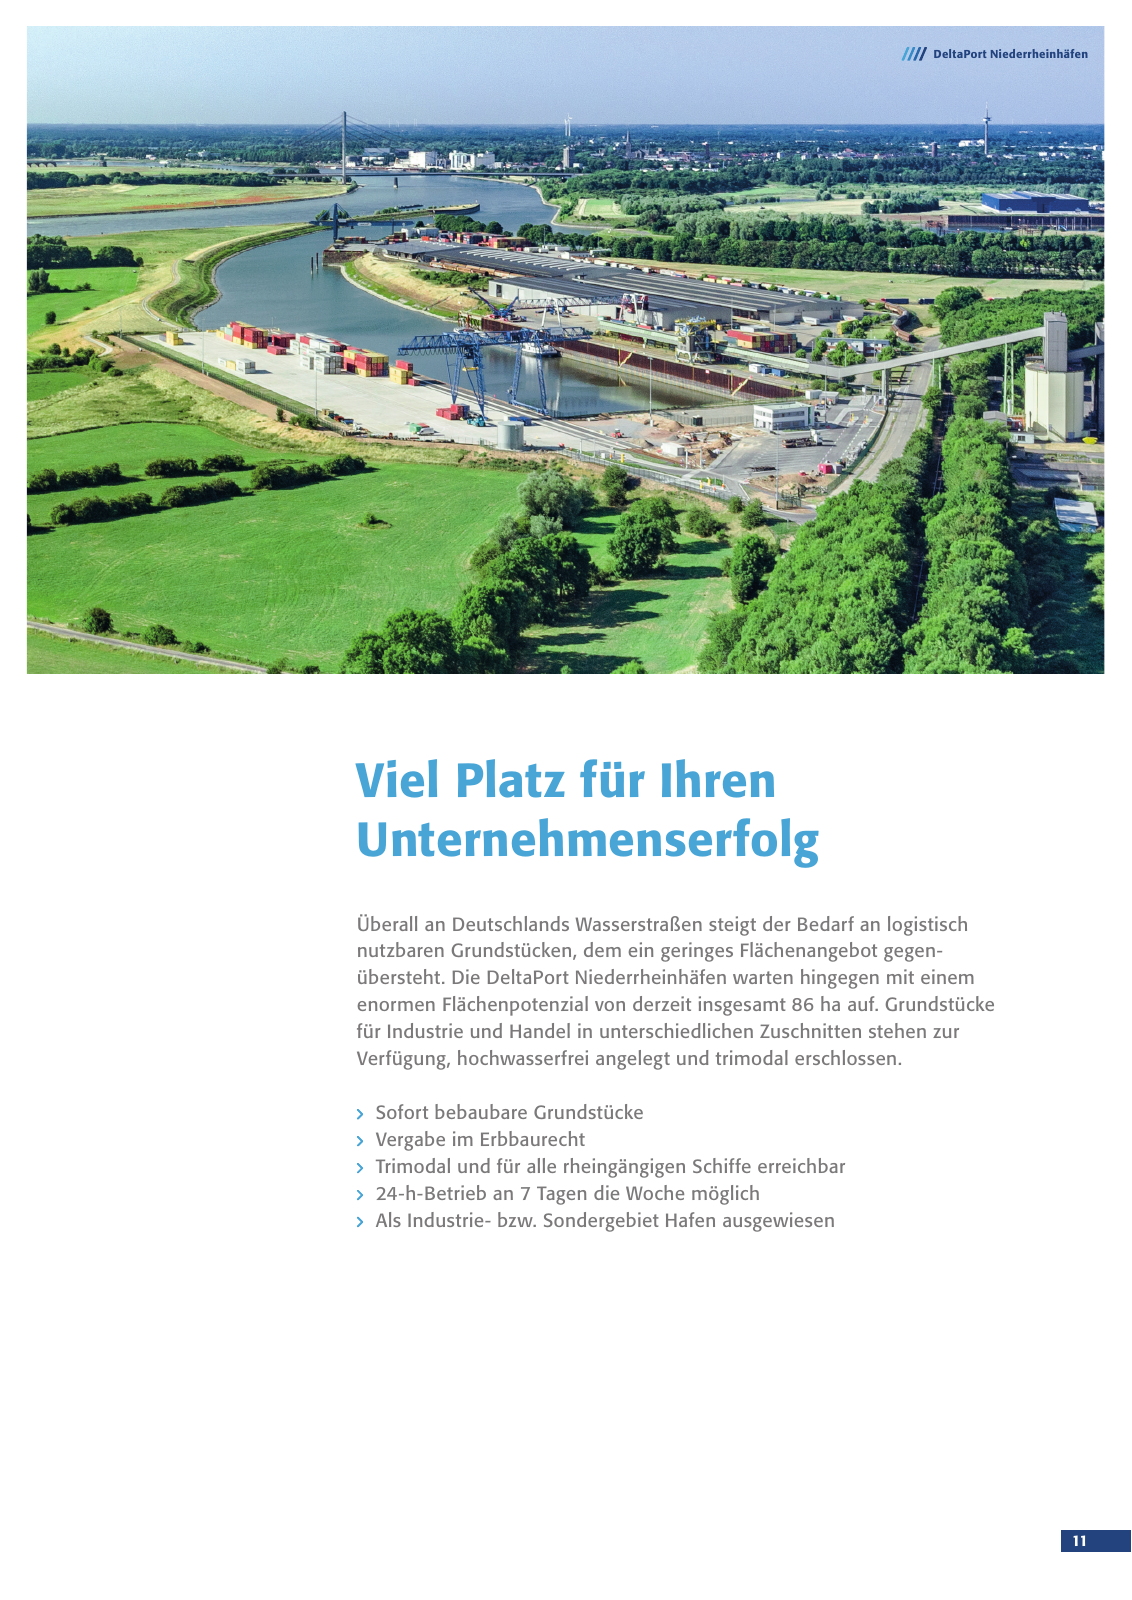 Vorschau Deltaport Niederrheinhäfen Image, deutsch Seite 11